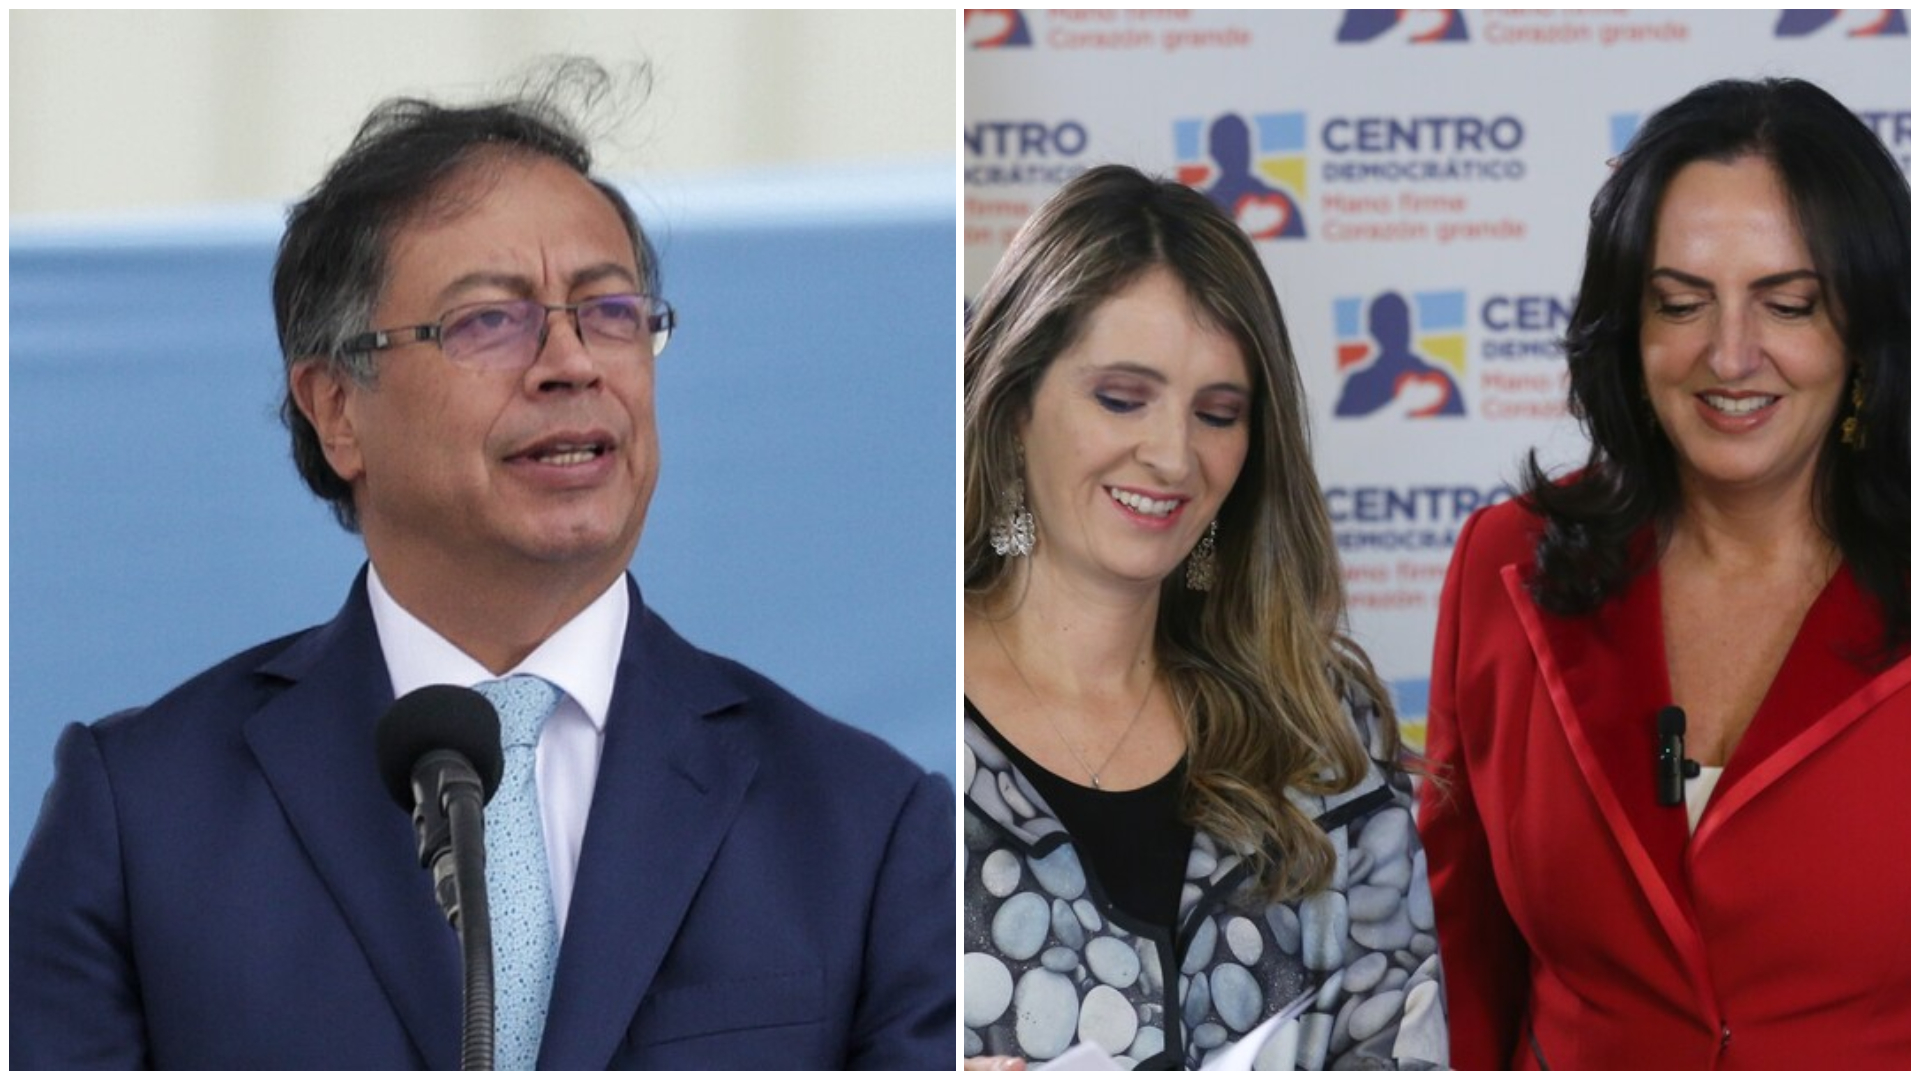 Al presidente Petro varios de sus opositores le jalaron las orejas por defender a Pedro Castillo, quien intentó dar un golpe de Estado en Perú. Fotos: Colprensa.